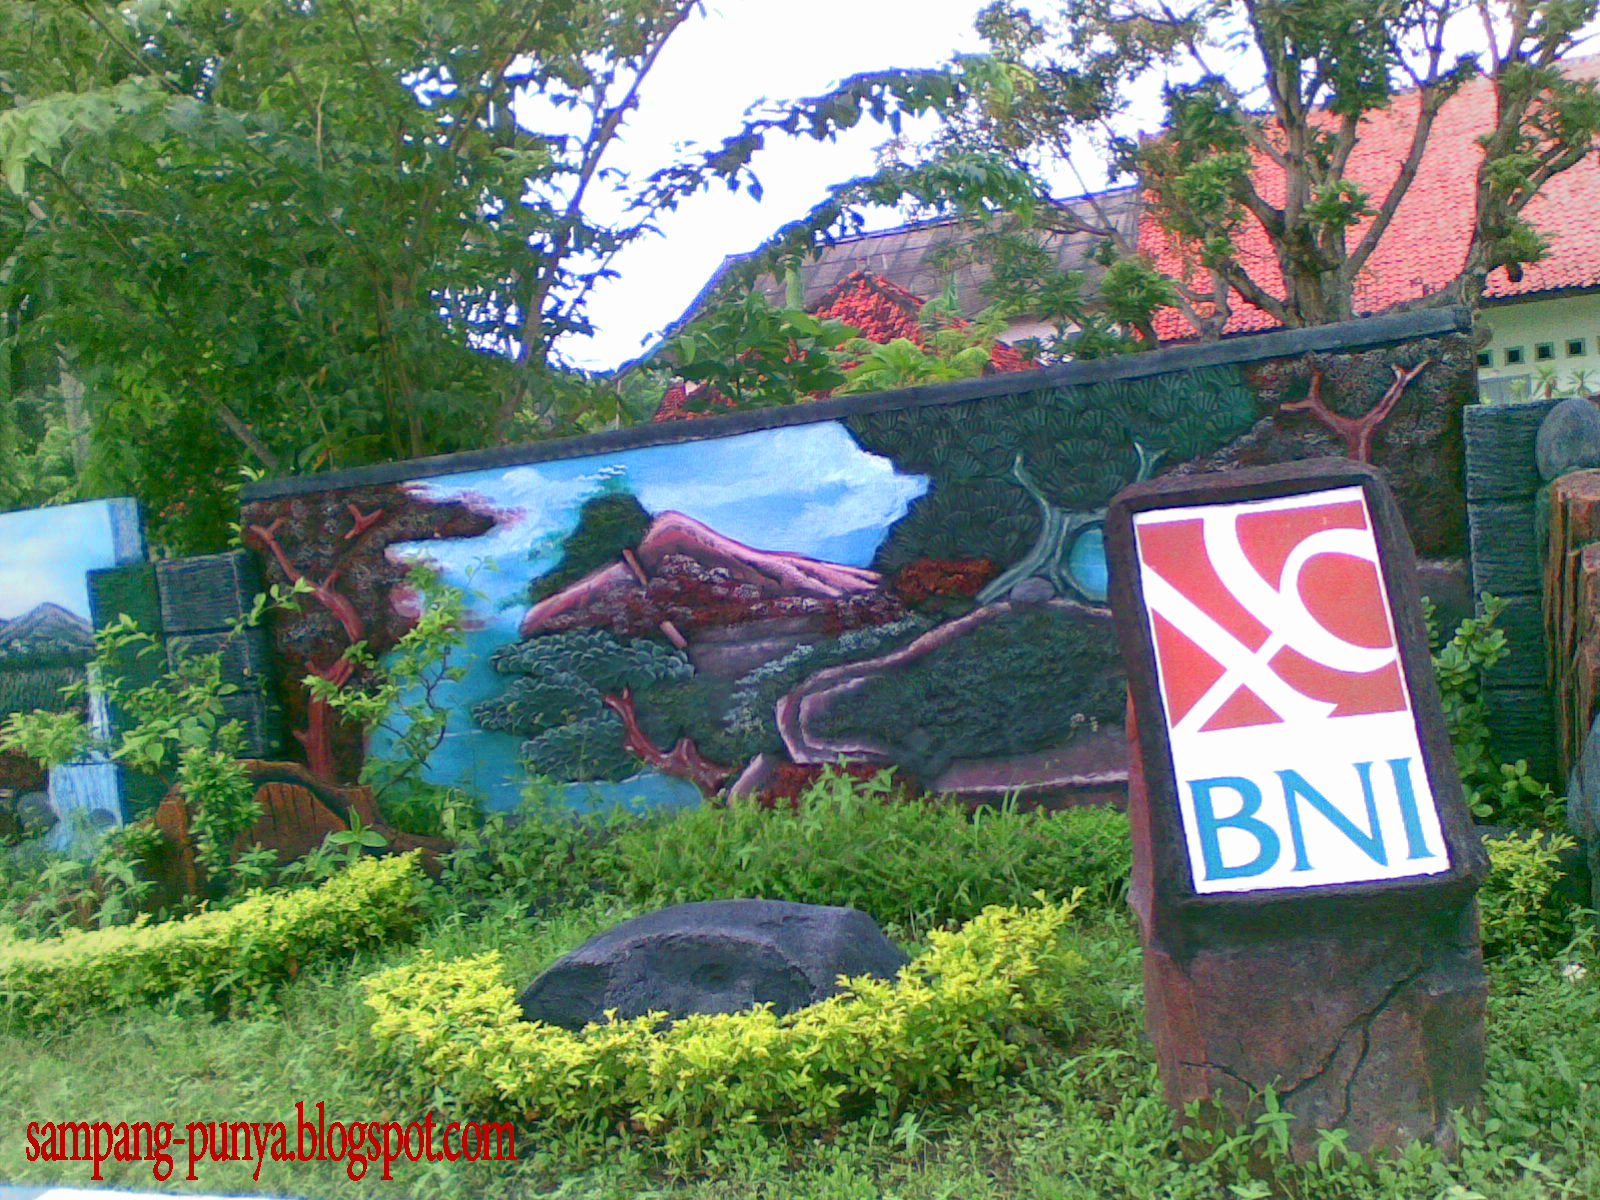  Taman  Minimalis  di Pinggir  Jalan  Kota Sampang Sampang Punya